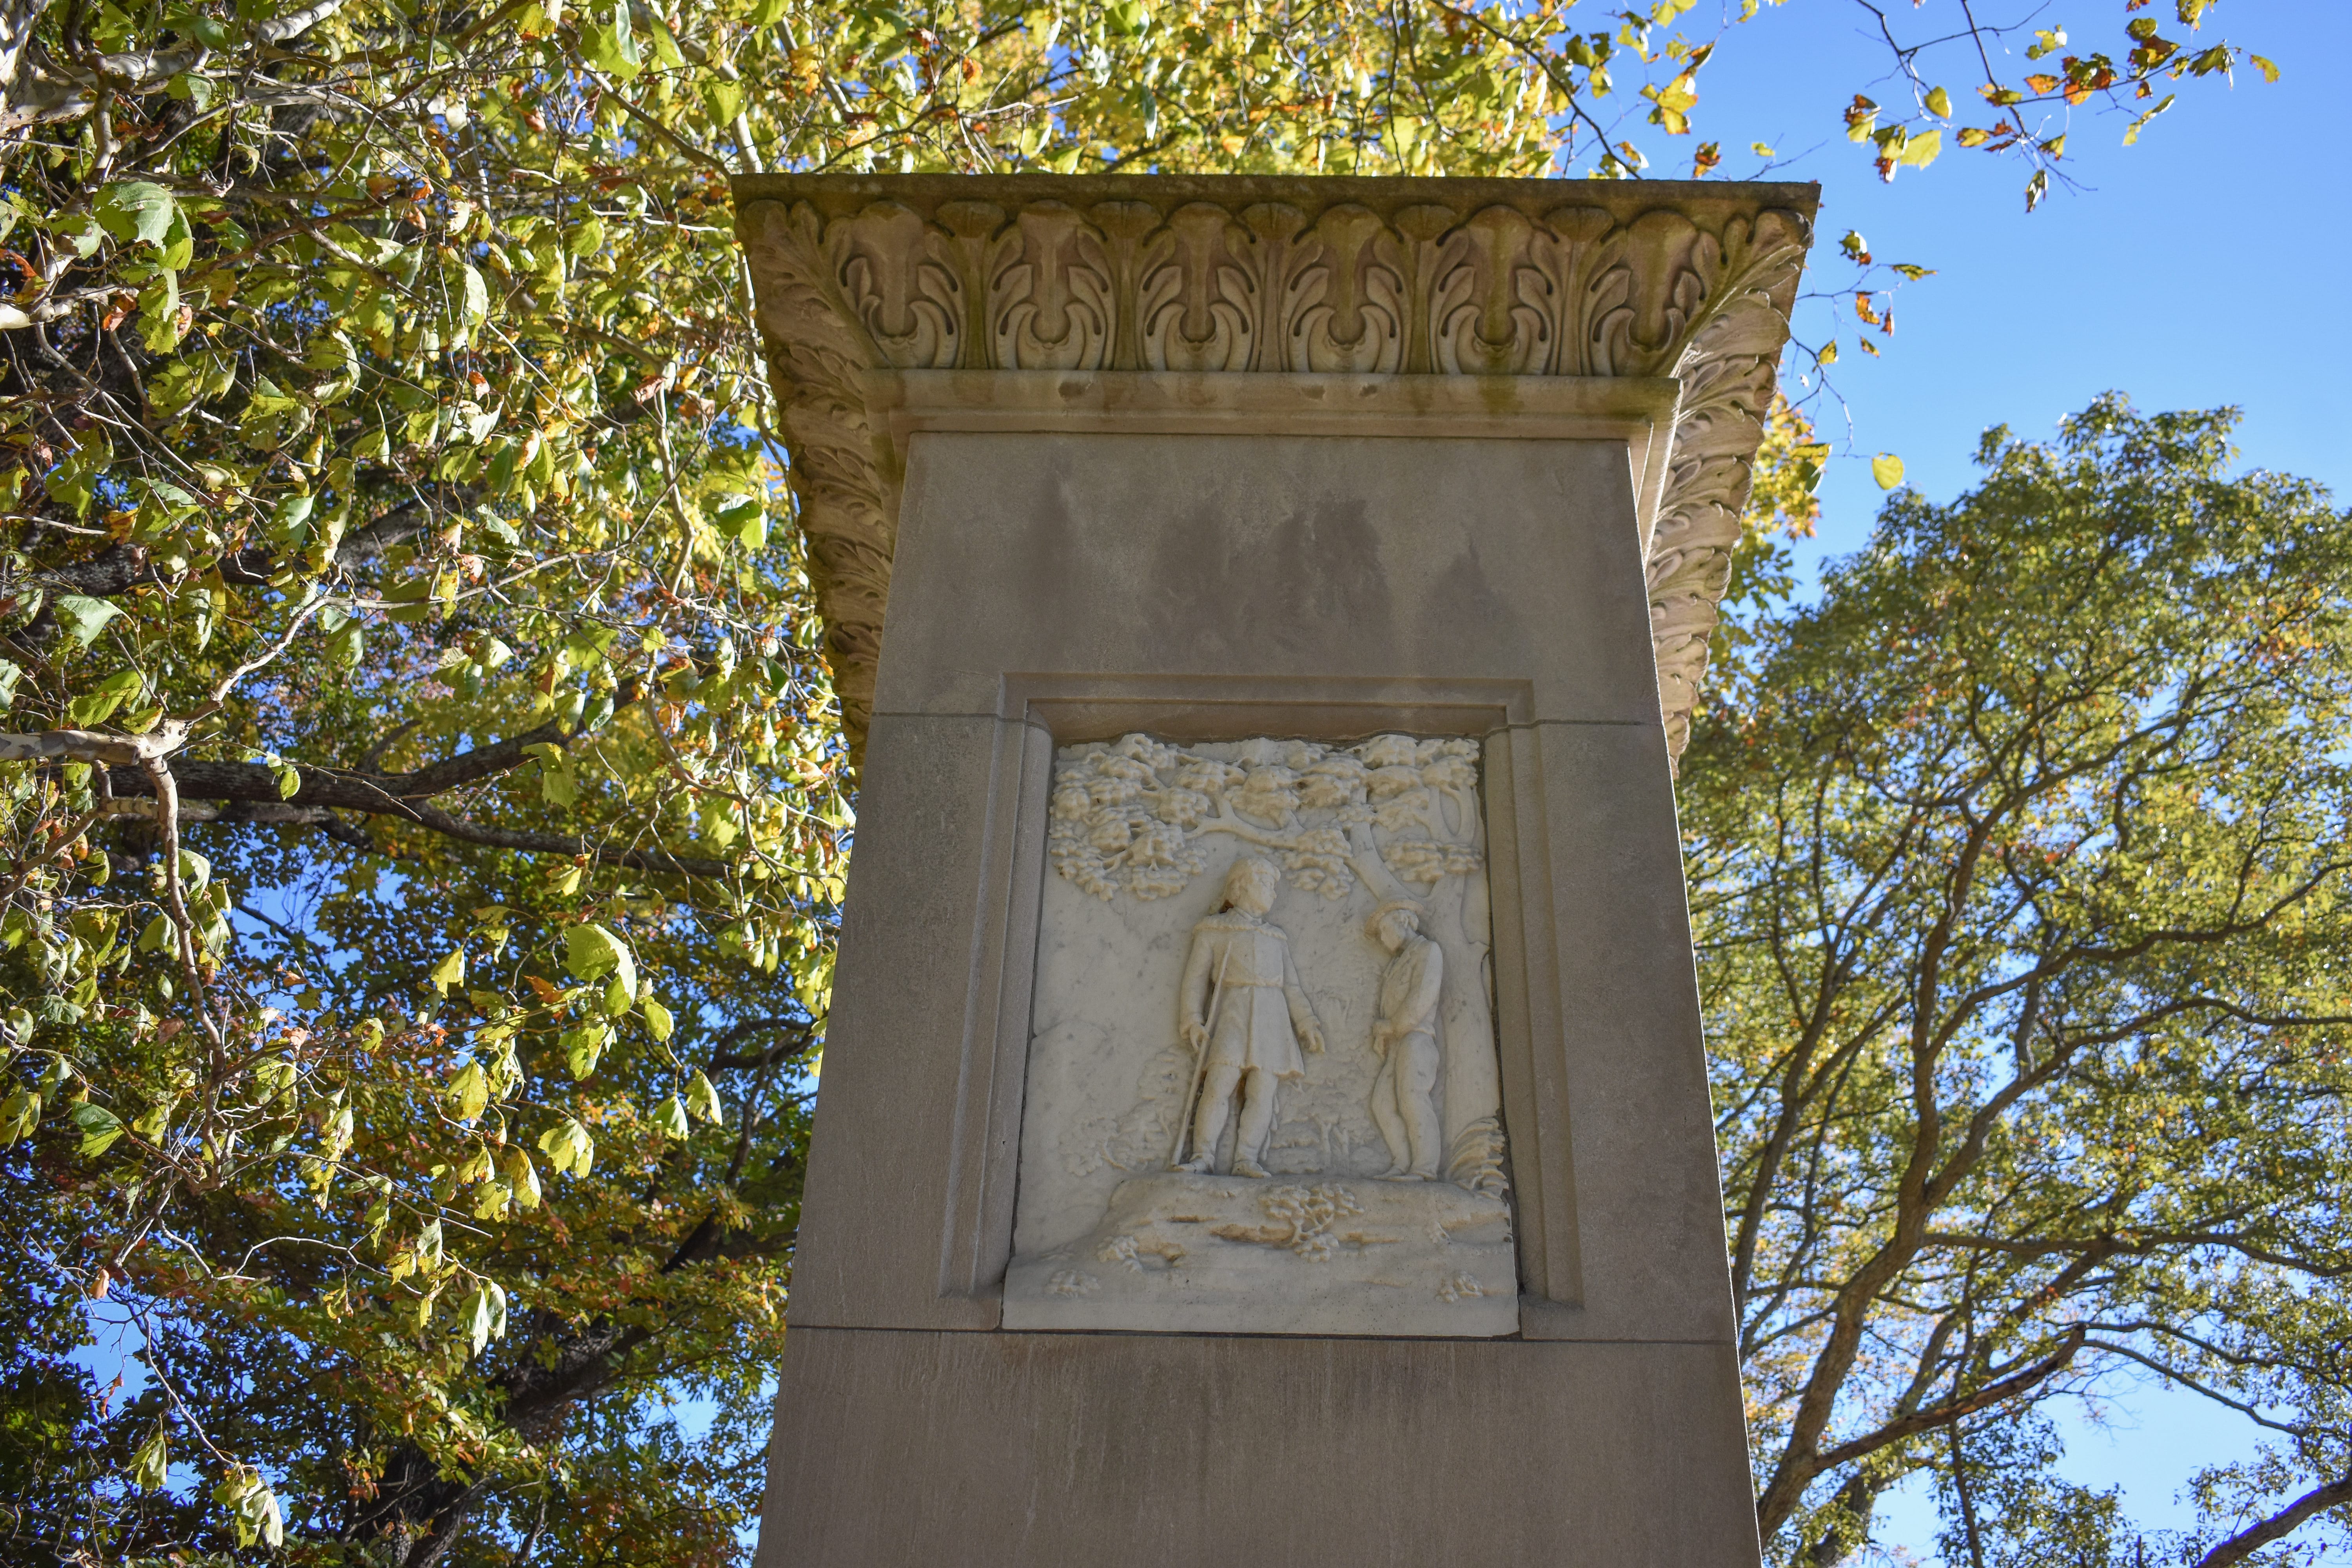 Daniel Boone Monument